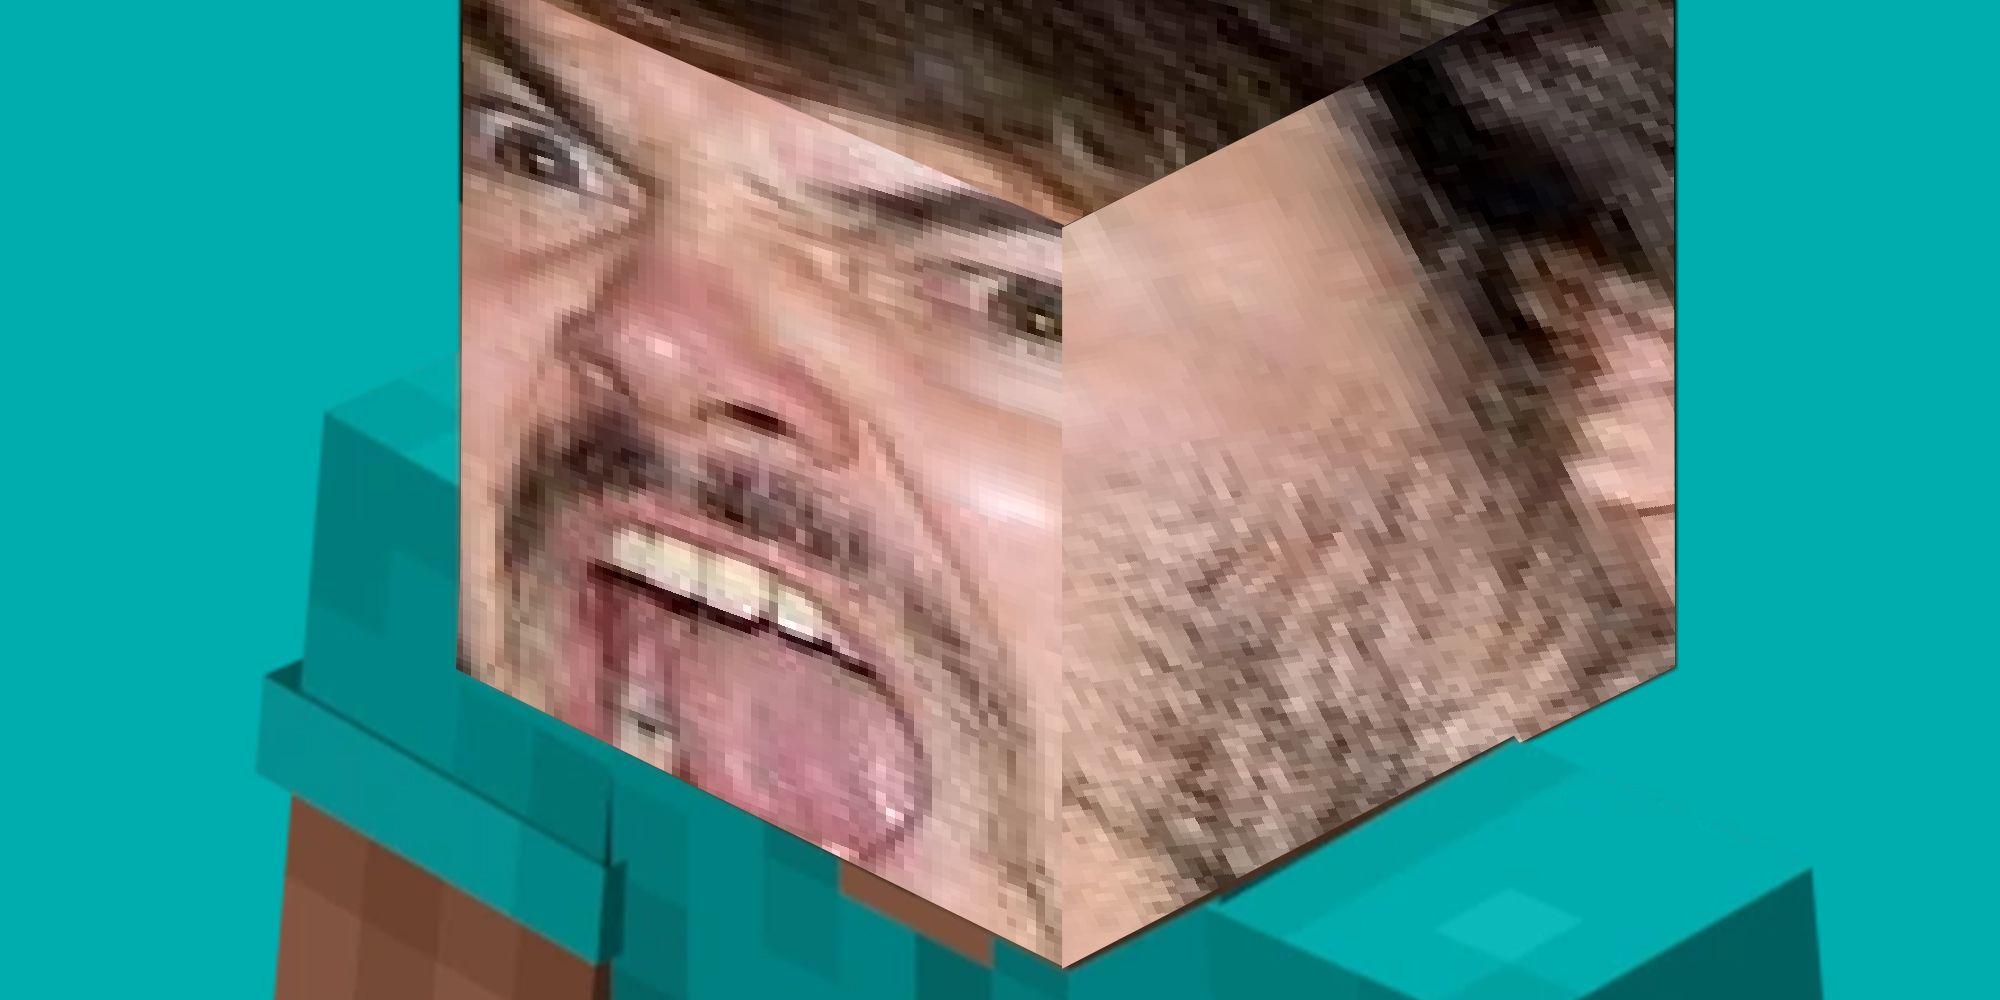 Jack Blacks face stretched over Minecraft Steve